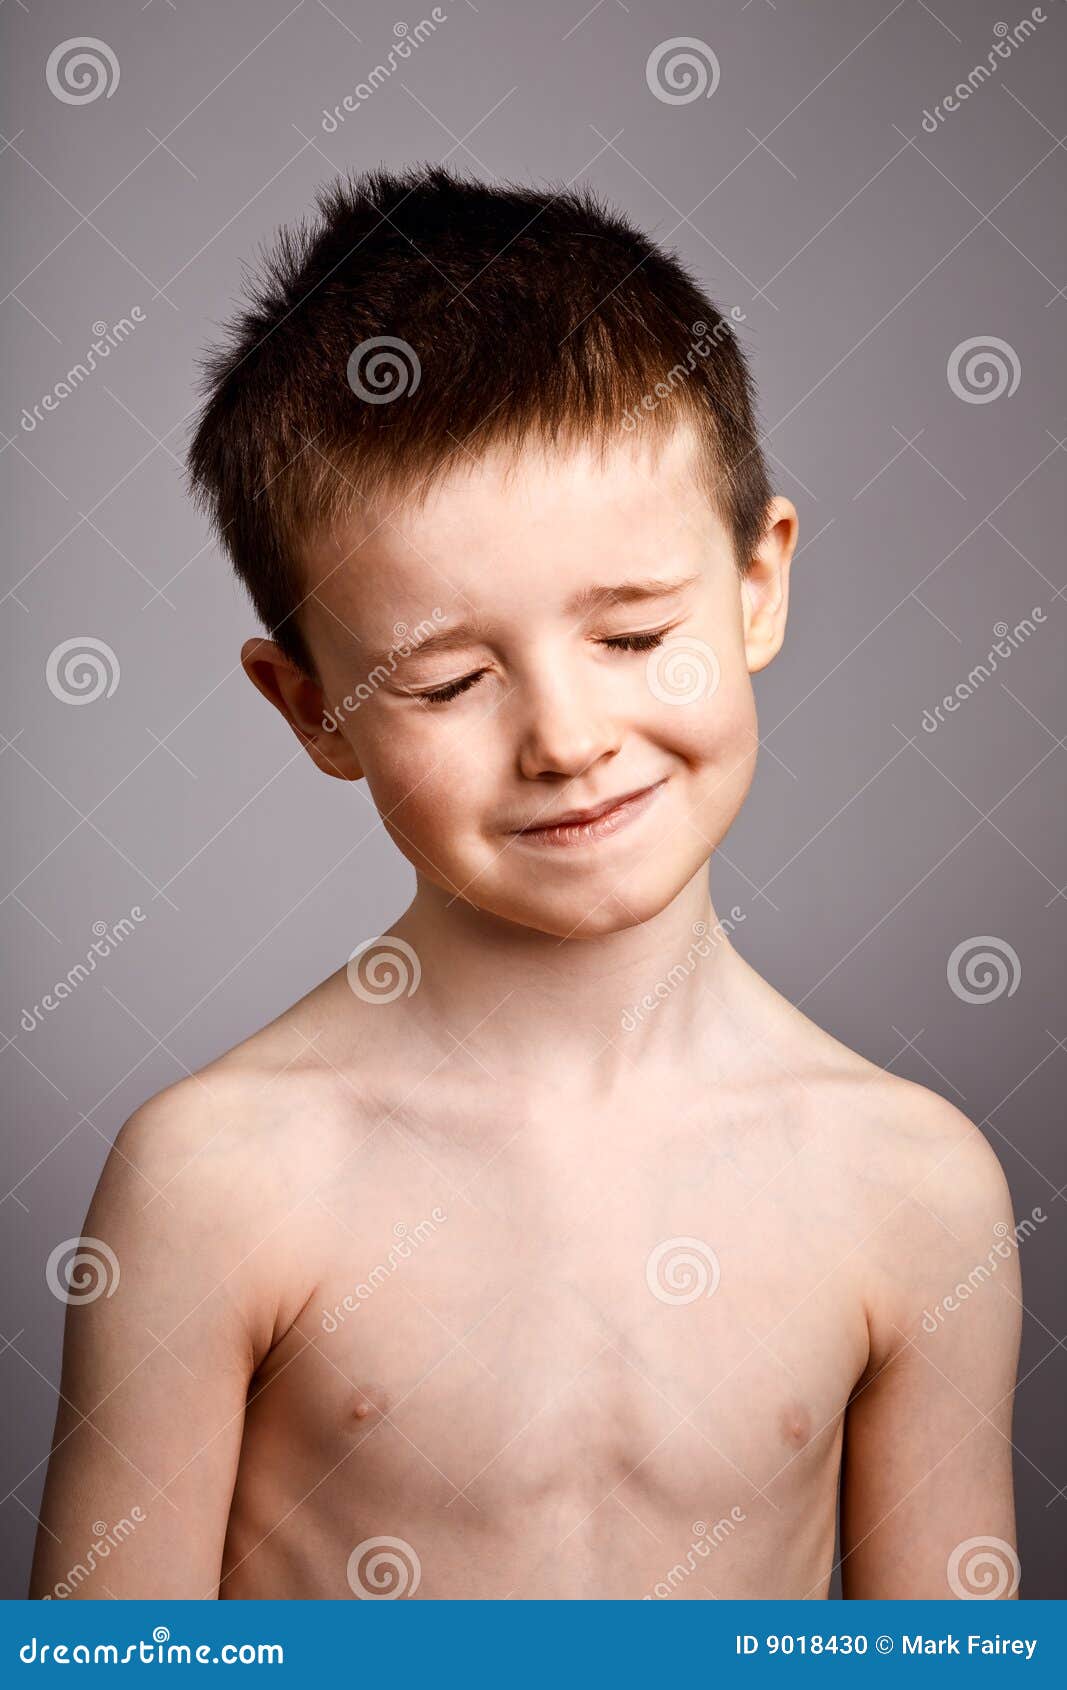 Naked Male Children